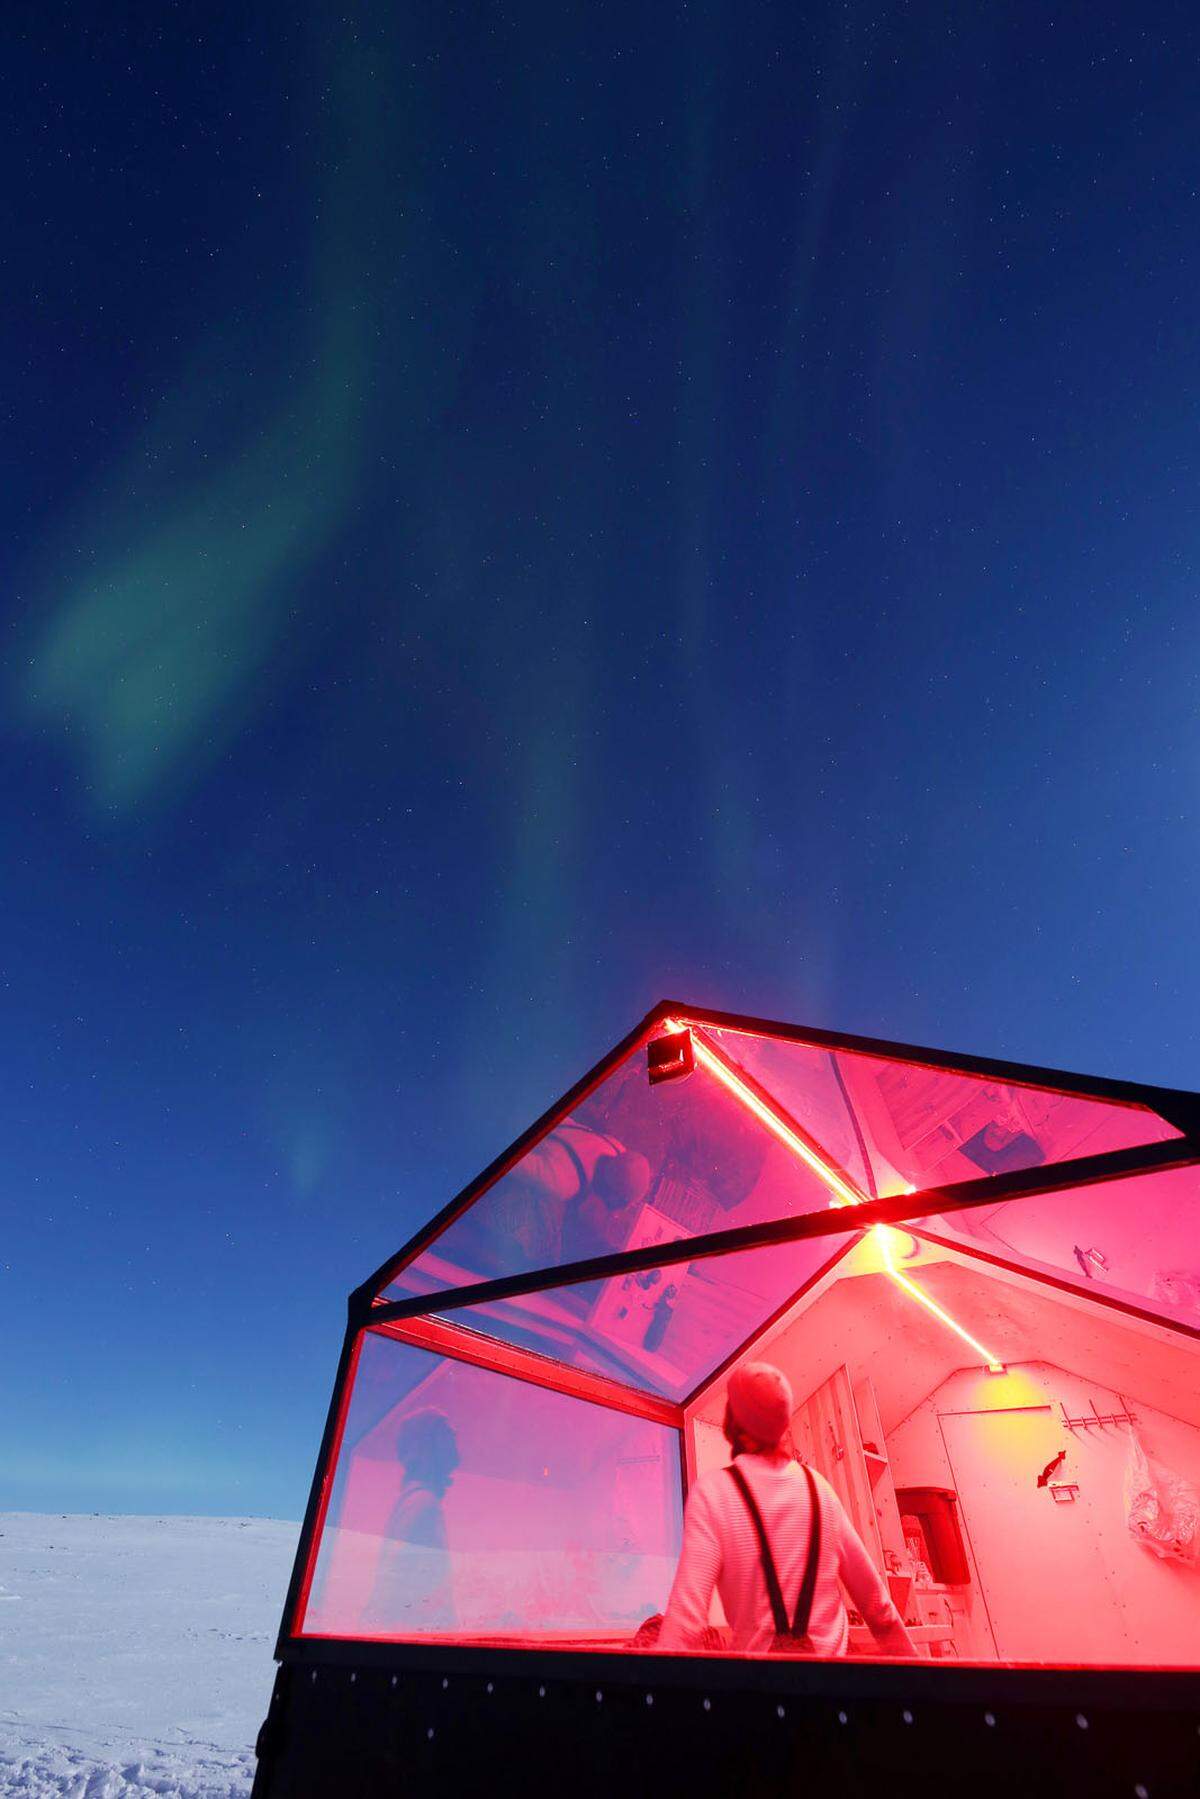 Die Polarlichter in der Abgeschiedenheit eines winzigen mobilen Hotelzimmers beobachten kann man neuerdings in Finnland.